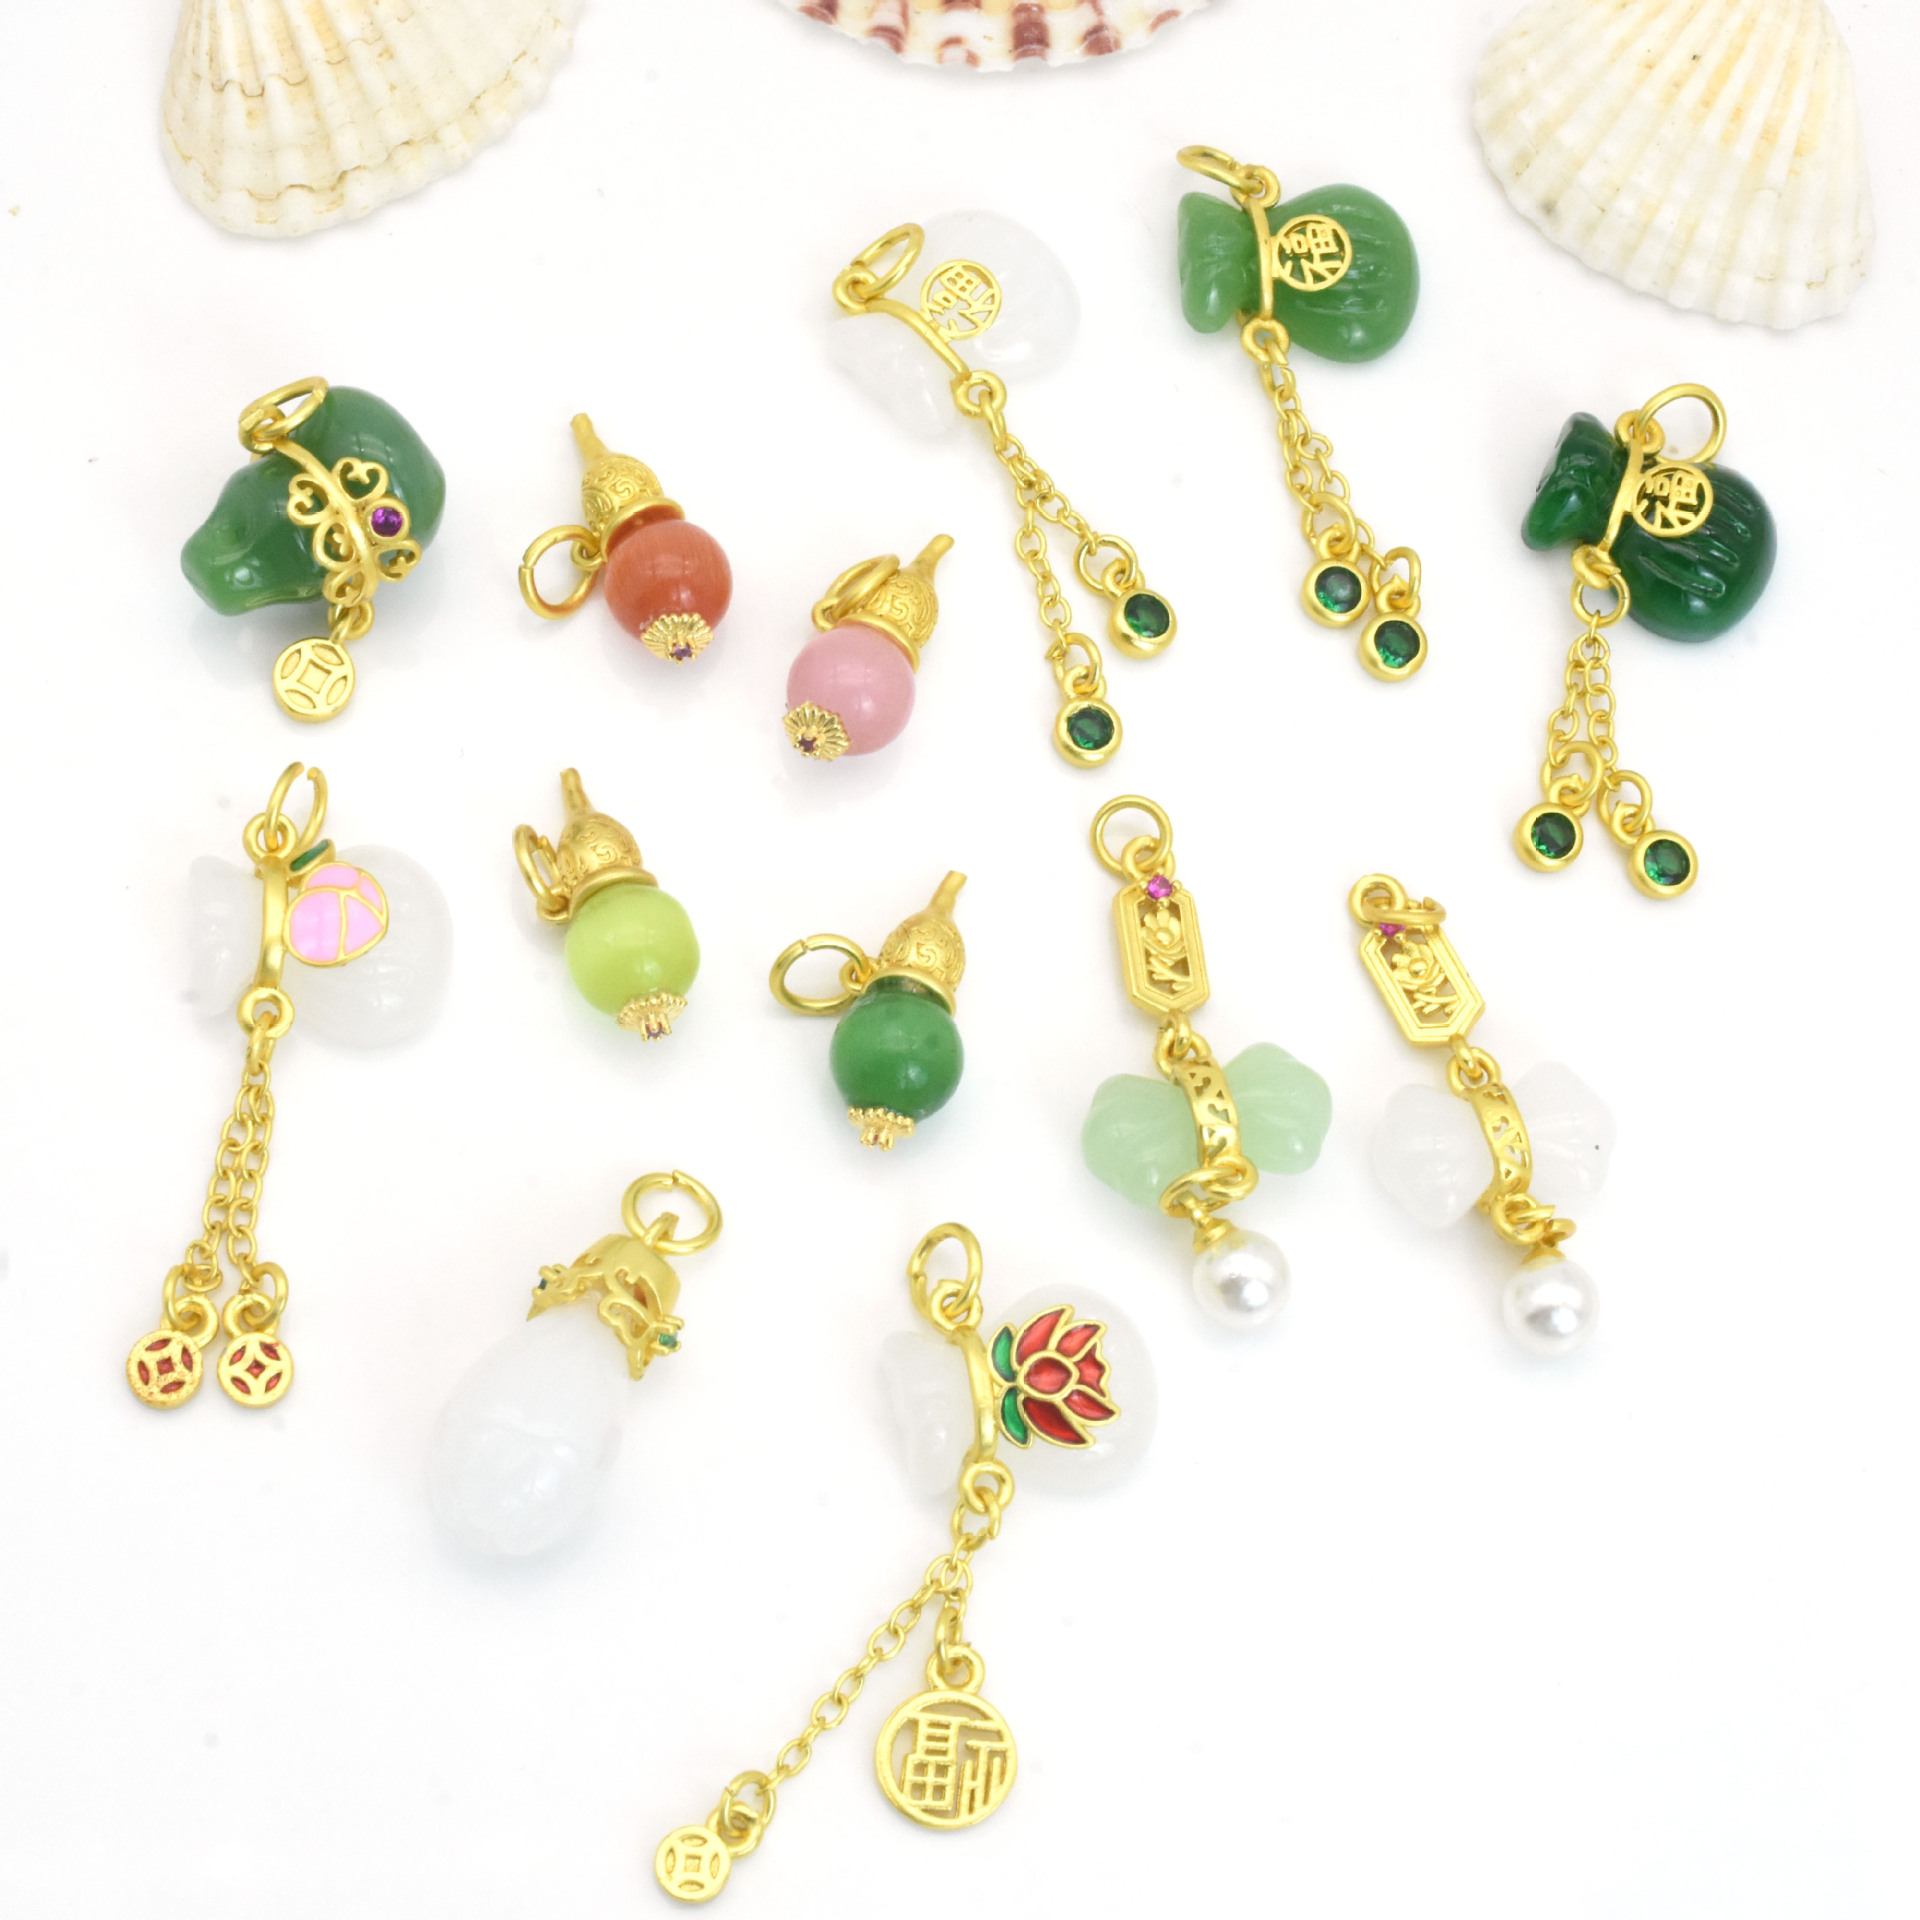 Ancient Style Mosaic Jade Pendant Gourd Lucky Bag Pendant Diy Ornament Bracelet Necklace Pendant Accessories Ornaments Wholesale